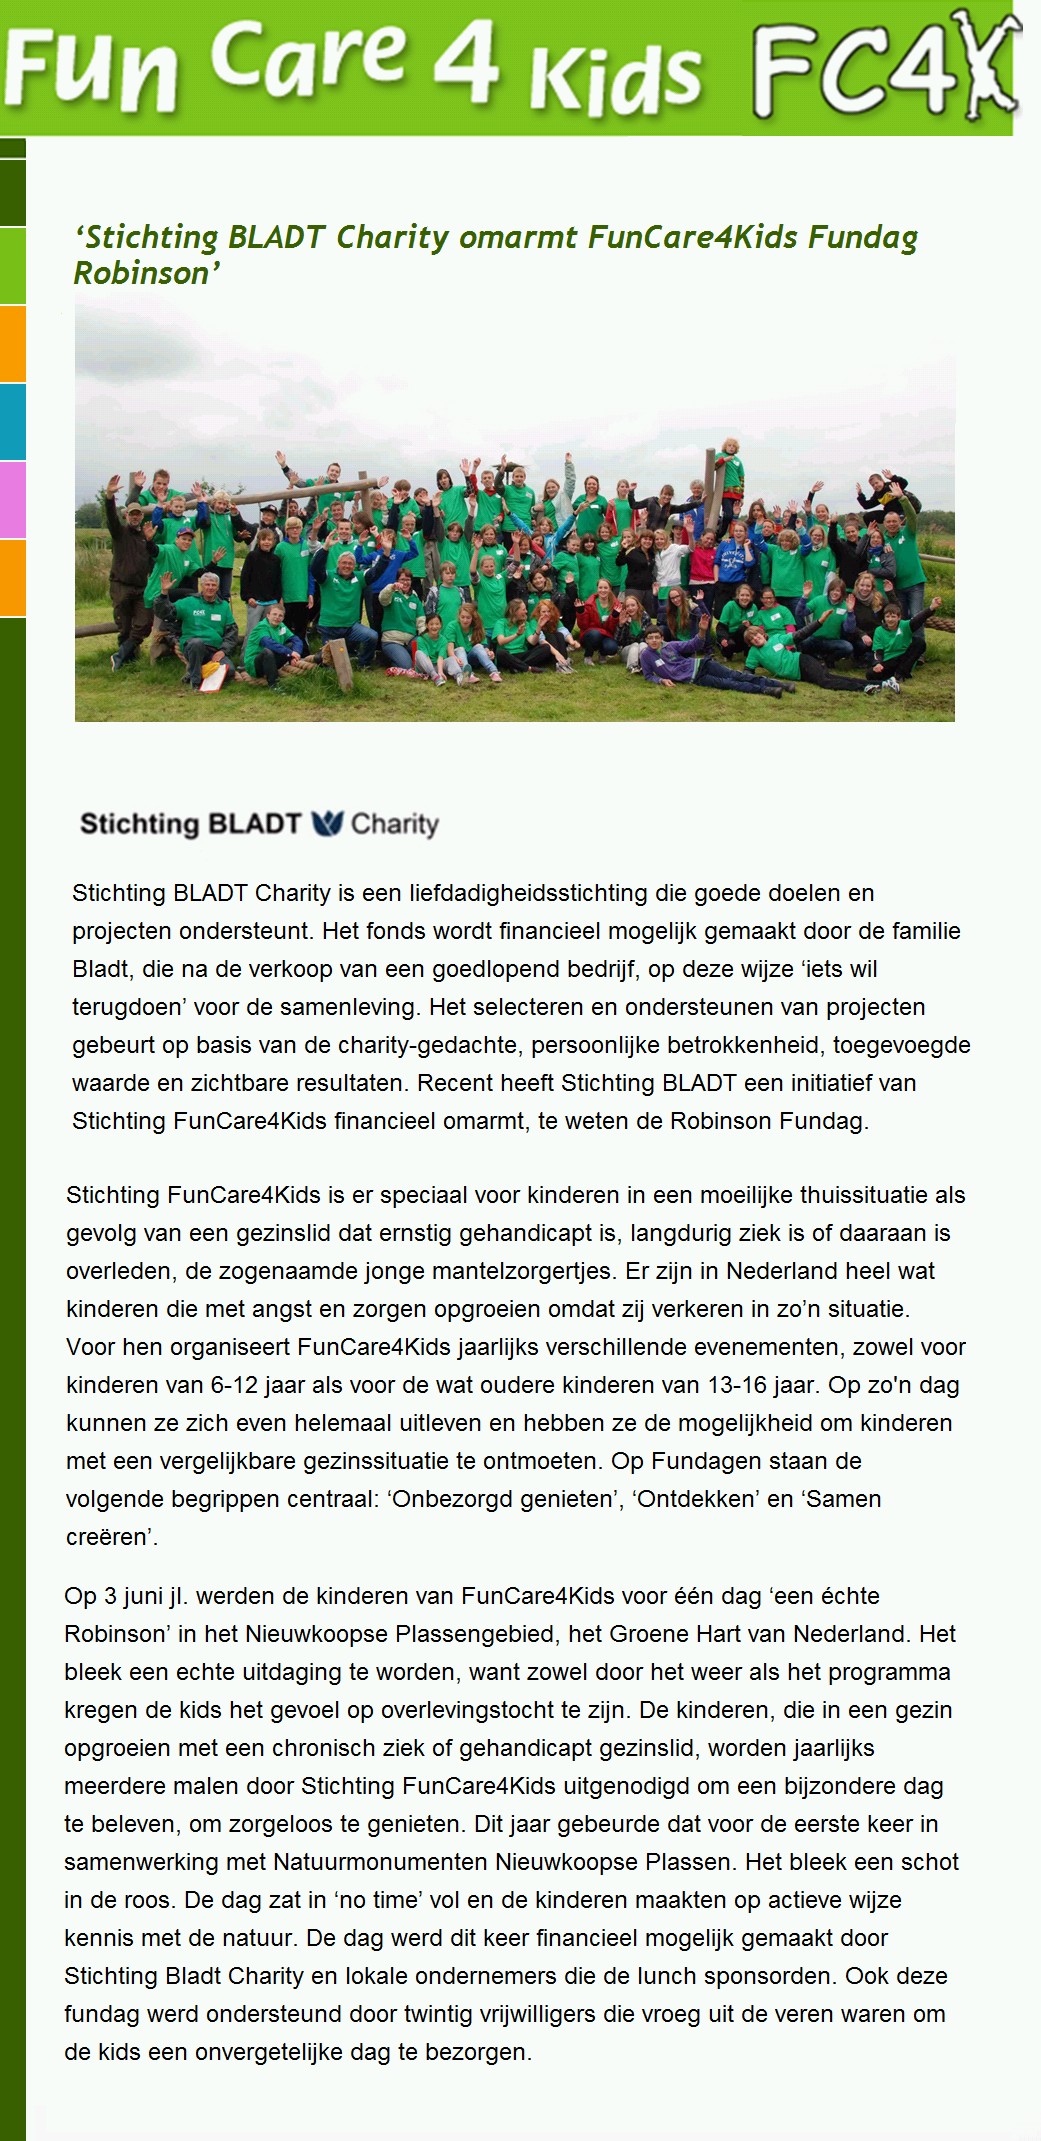 fc4k-artikel over donatie Bladt Charity juni 2012